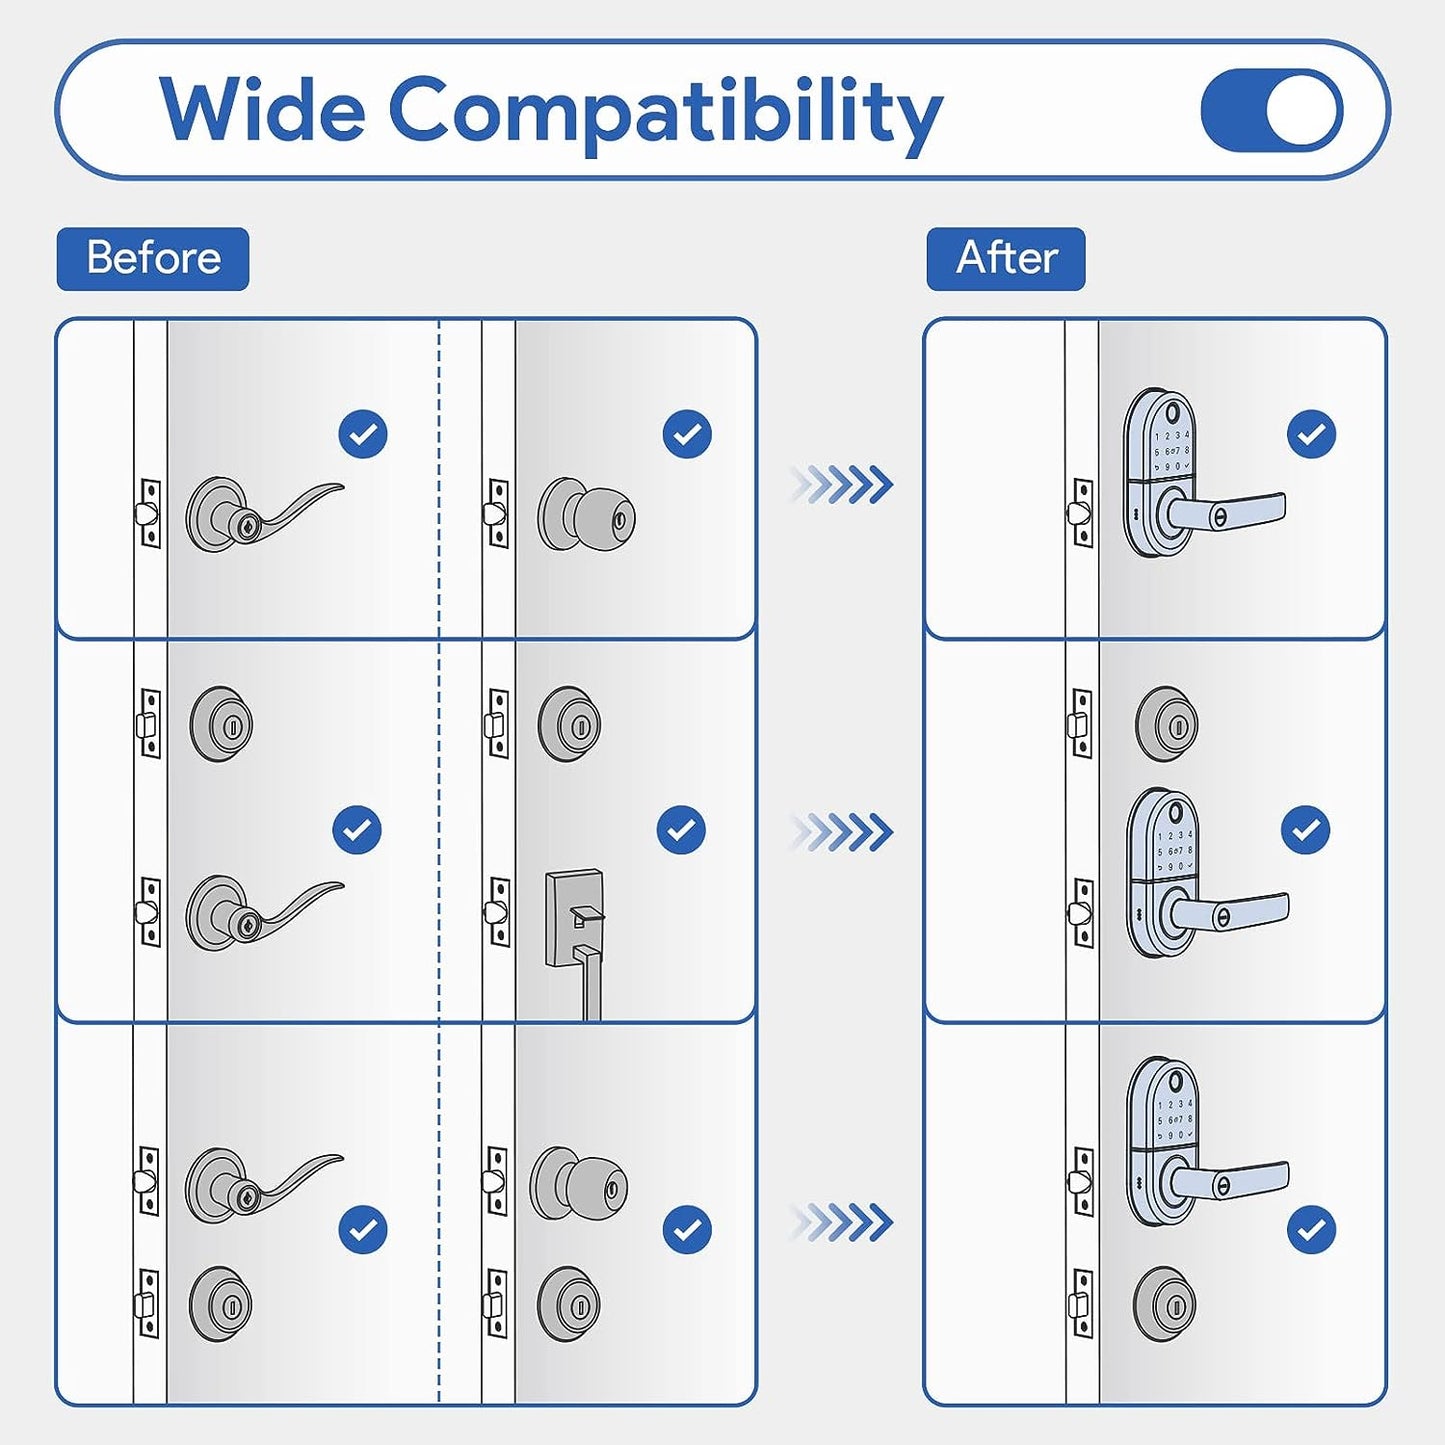 Smart Door Lock with Handle: Fingerprint Door Lock - Keyless Entry Door Lock for Front Door